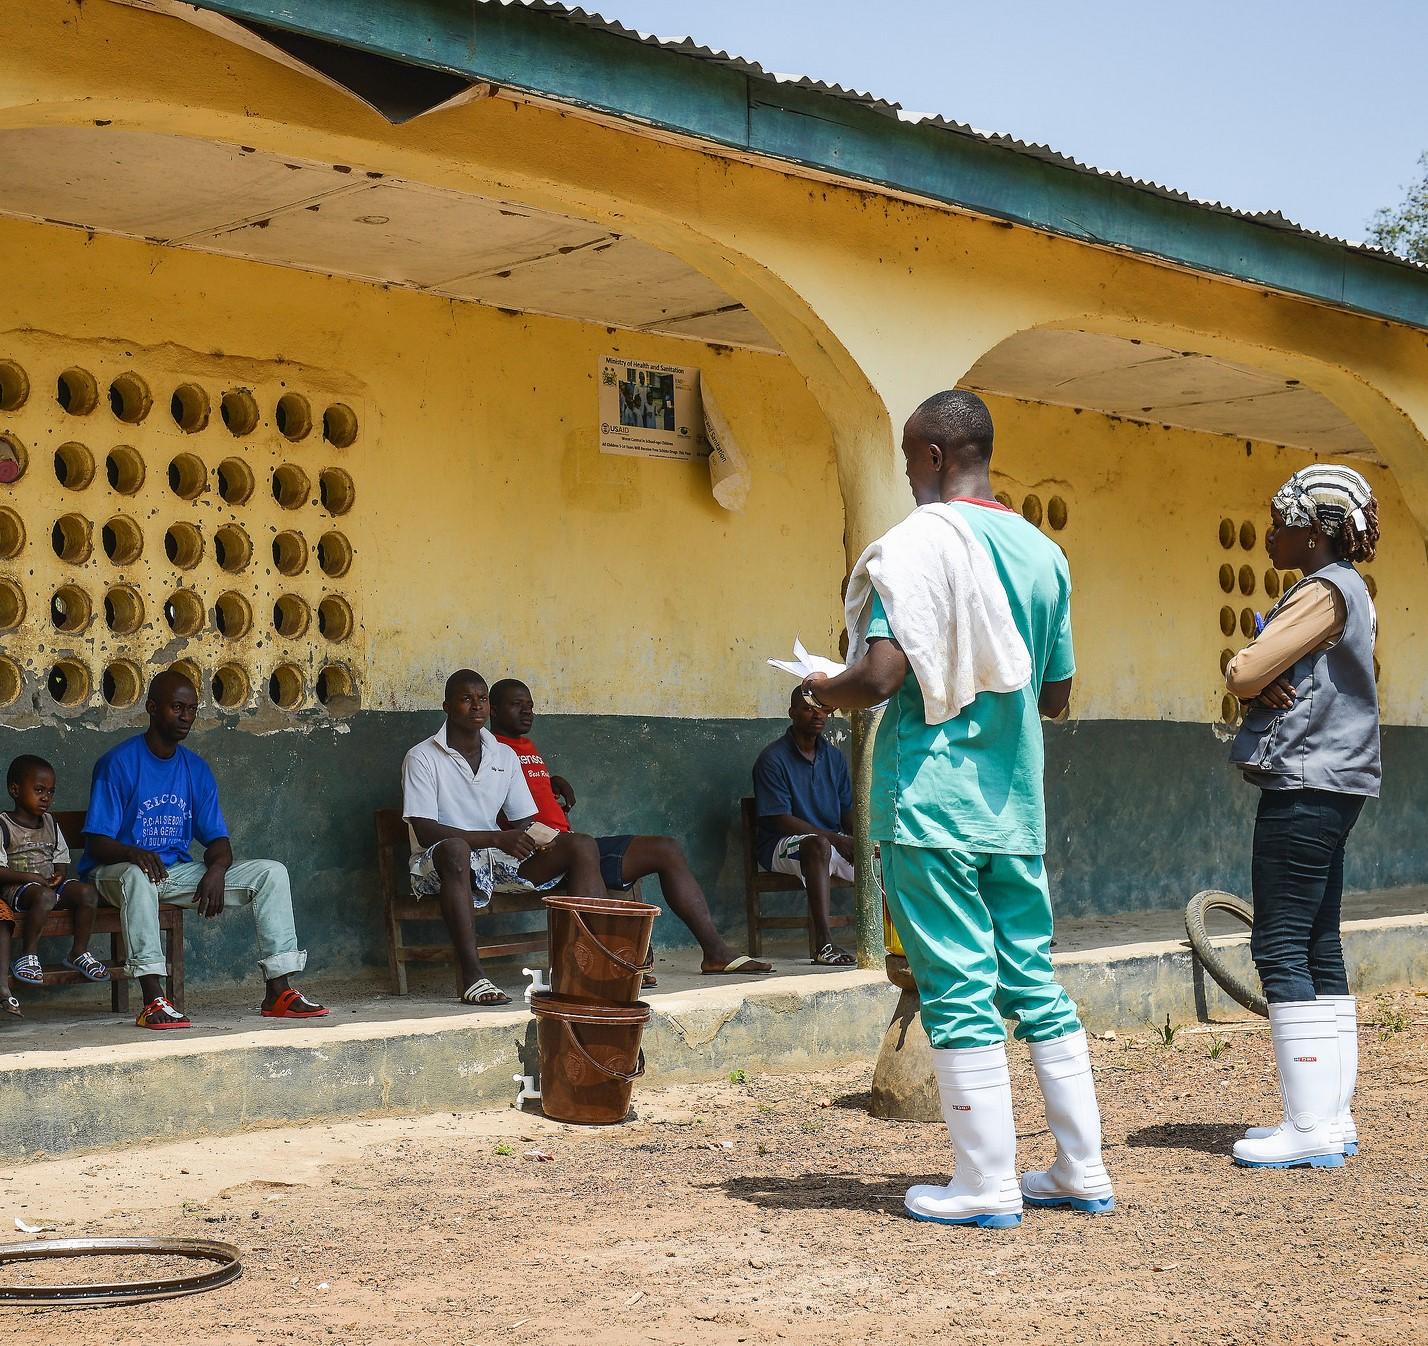 Ebola village response efforts